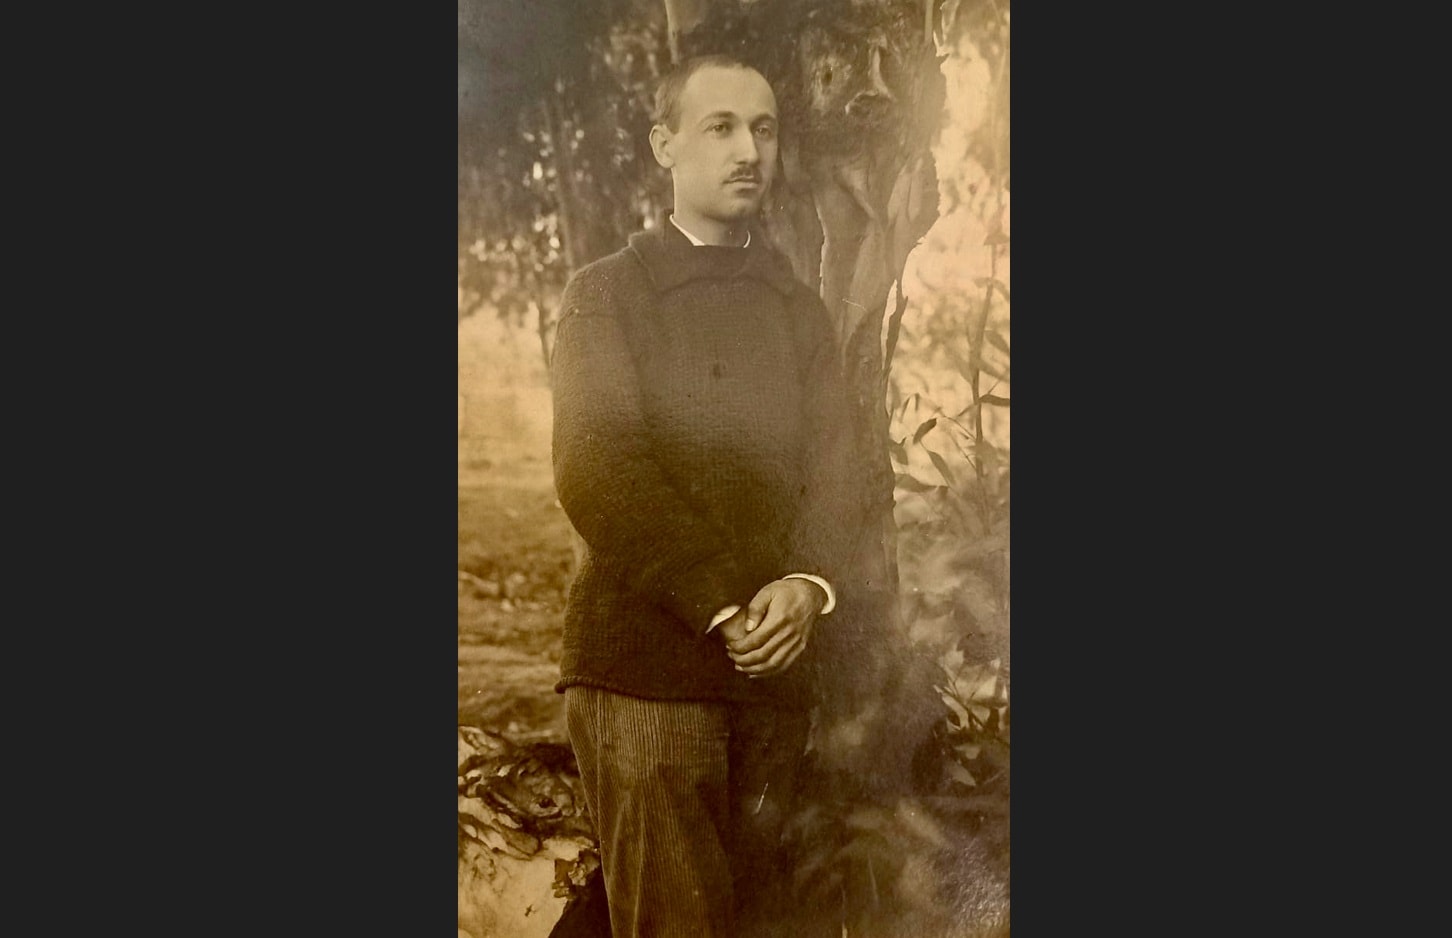 סבא אליהו רפופורט בחדרה, 1922 (צילום: סטודיו קריסטל)